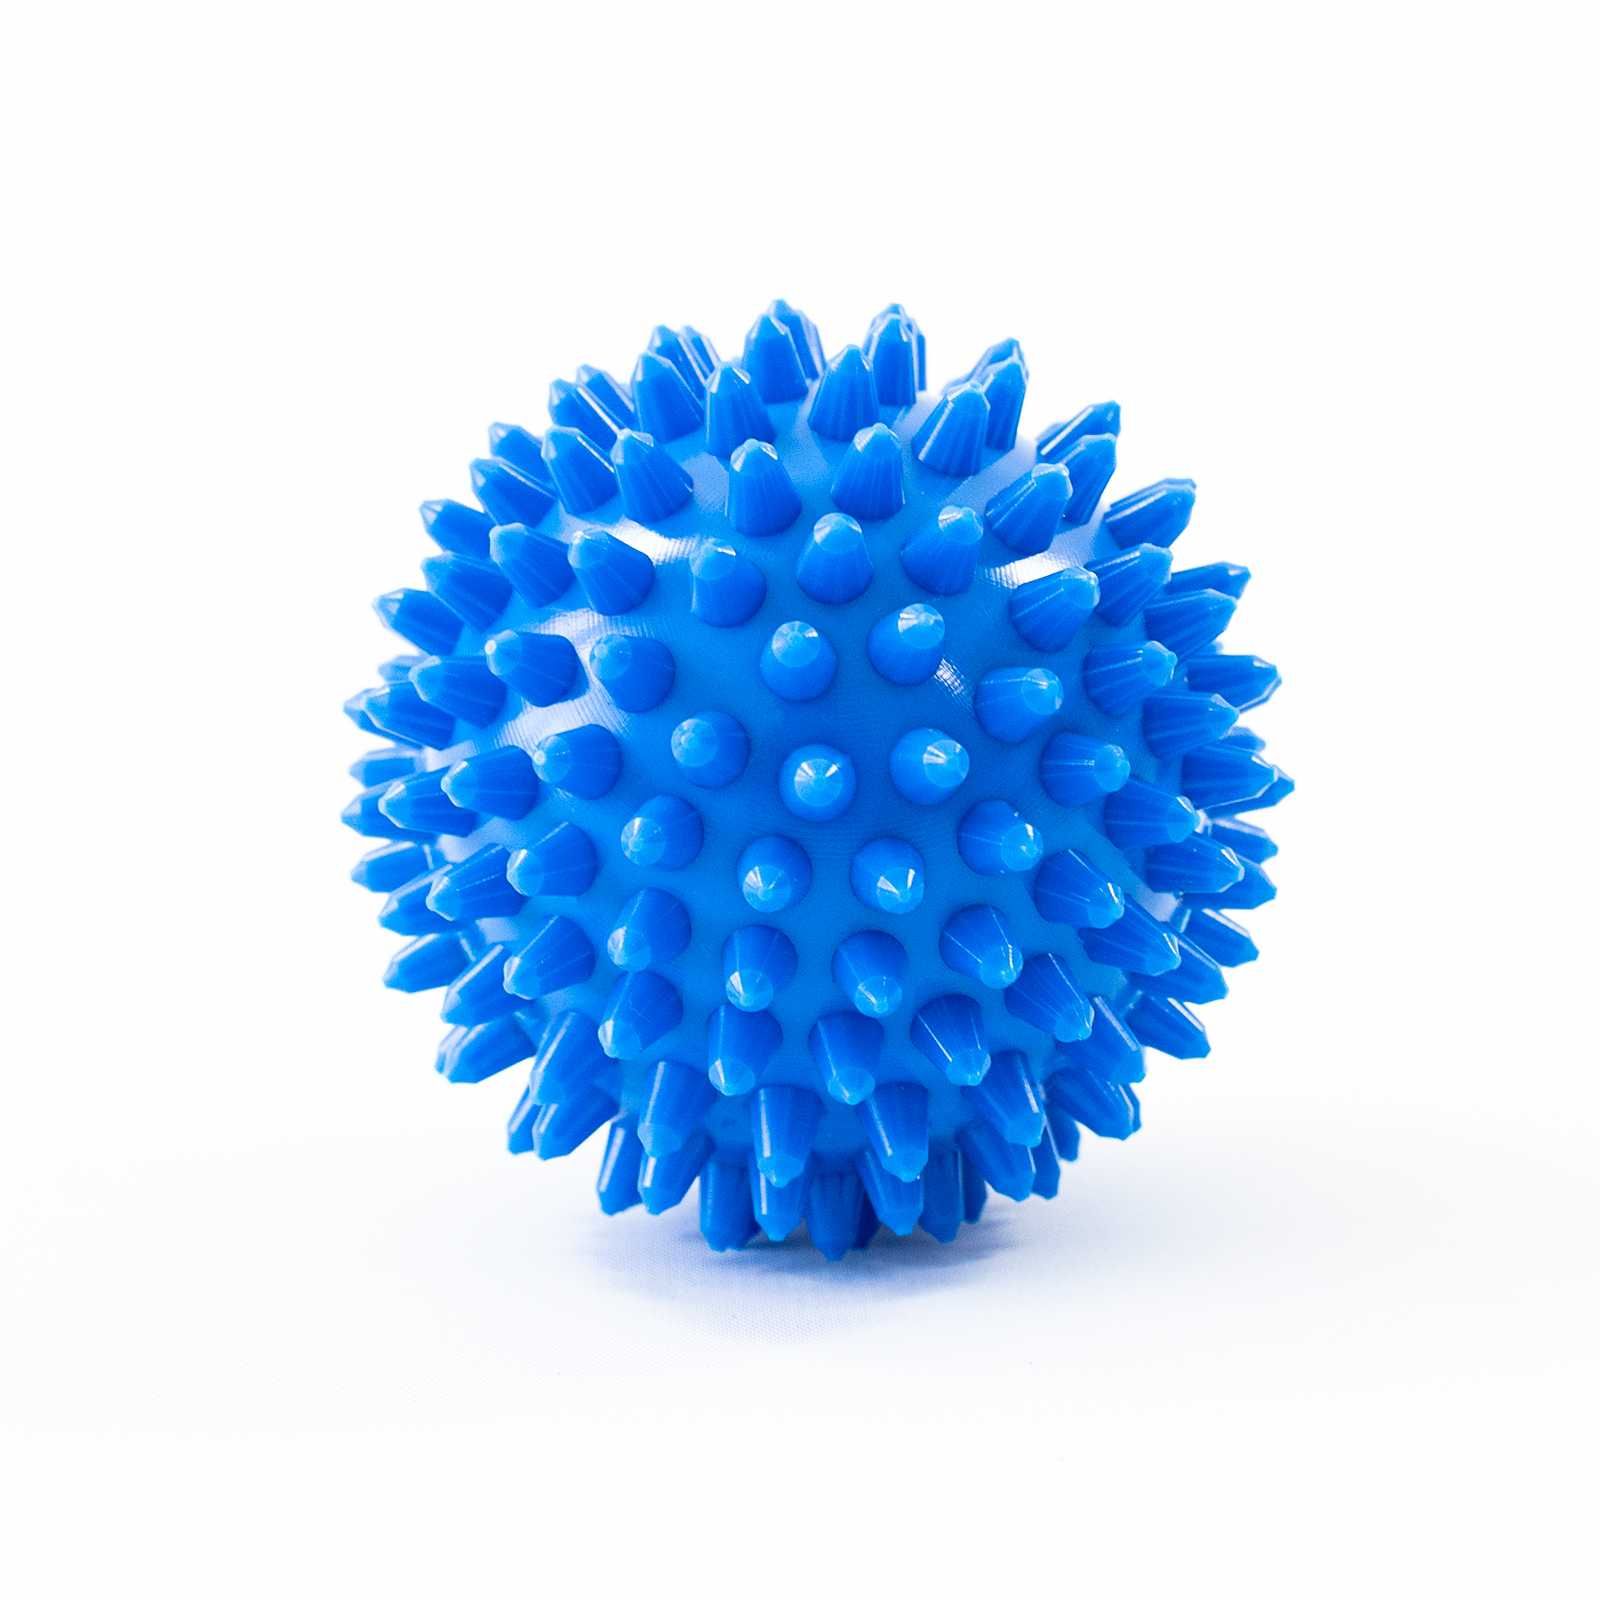 Мяч (шарик ПВХ) с шипами для стирки белья, пуховых изделий, полотенец